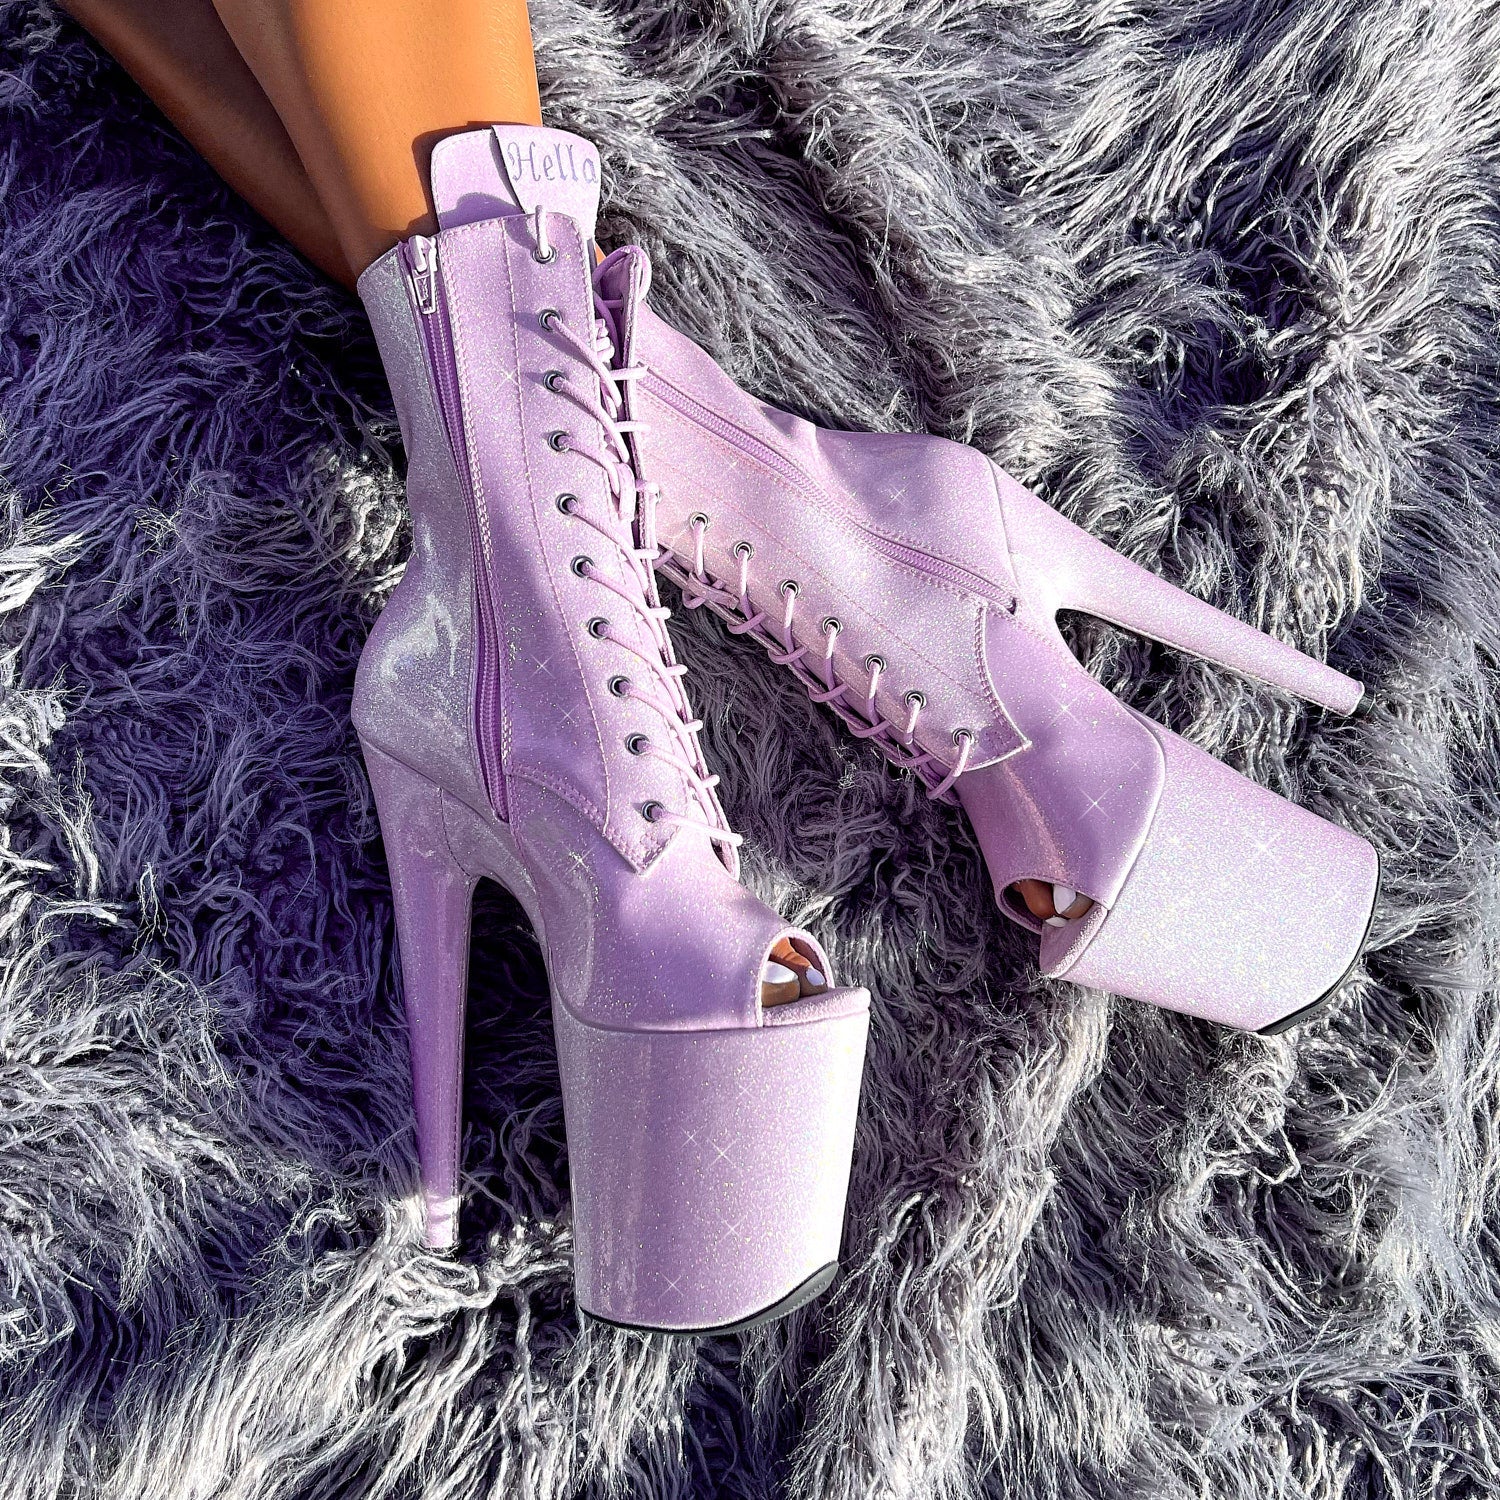 The Glitterati Open Toe Boot - Lilac Lovers - 8 INCH, stripper shoe, stripper heel, pole heel, not a pleaser, platform, dancer, pole dance, floor work